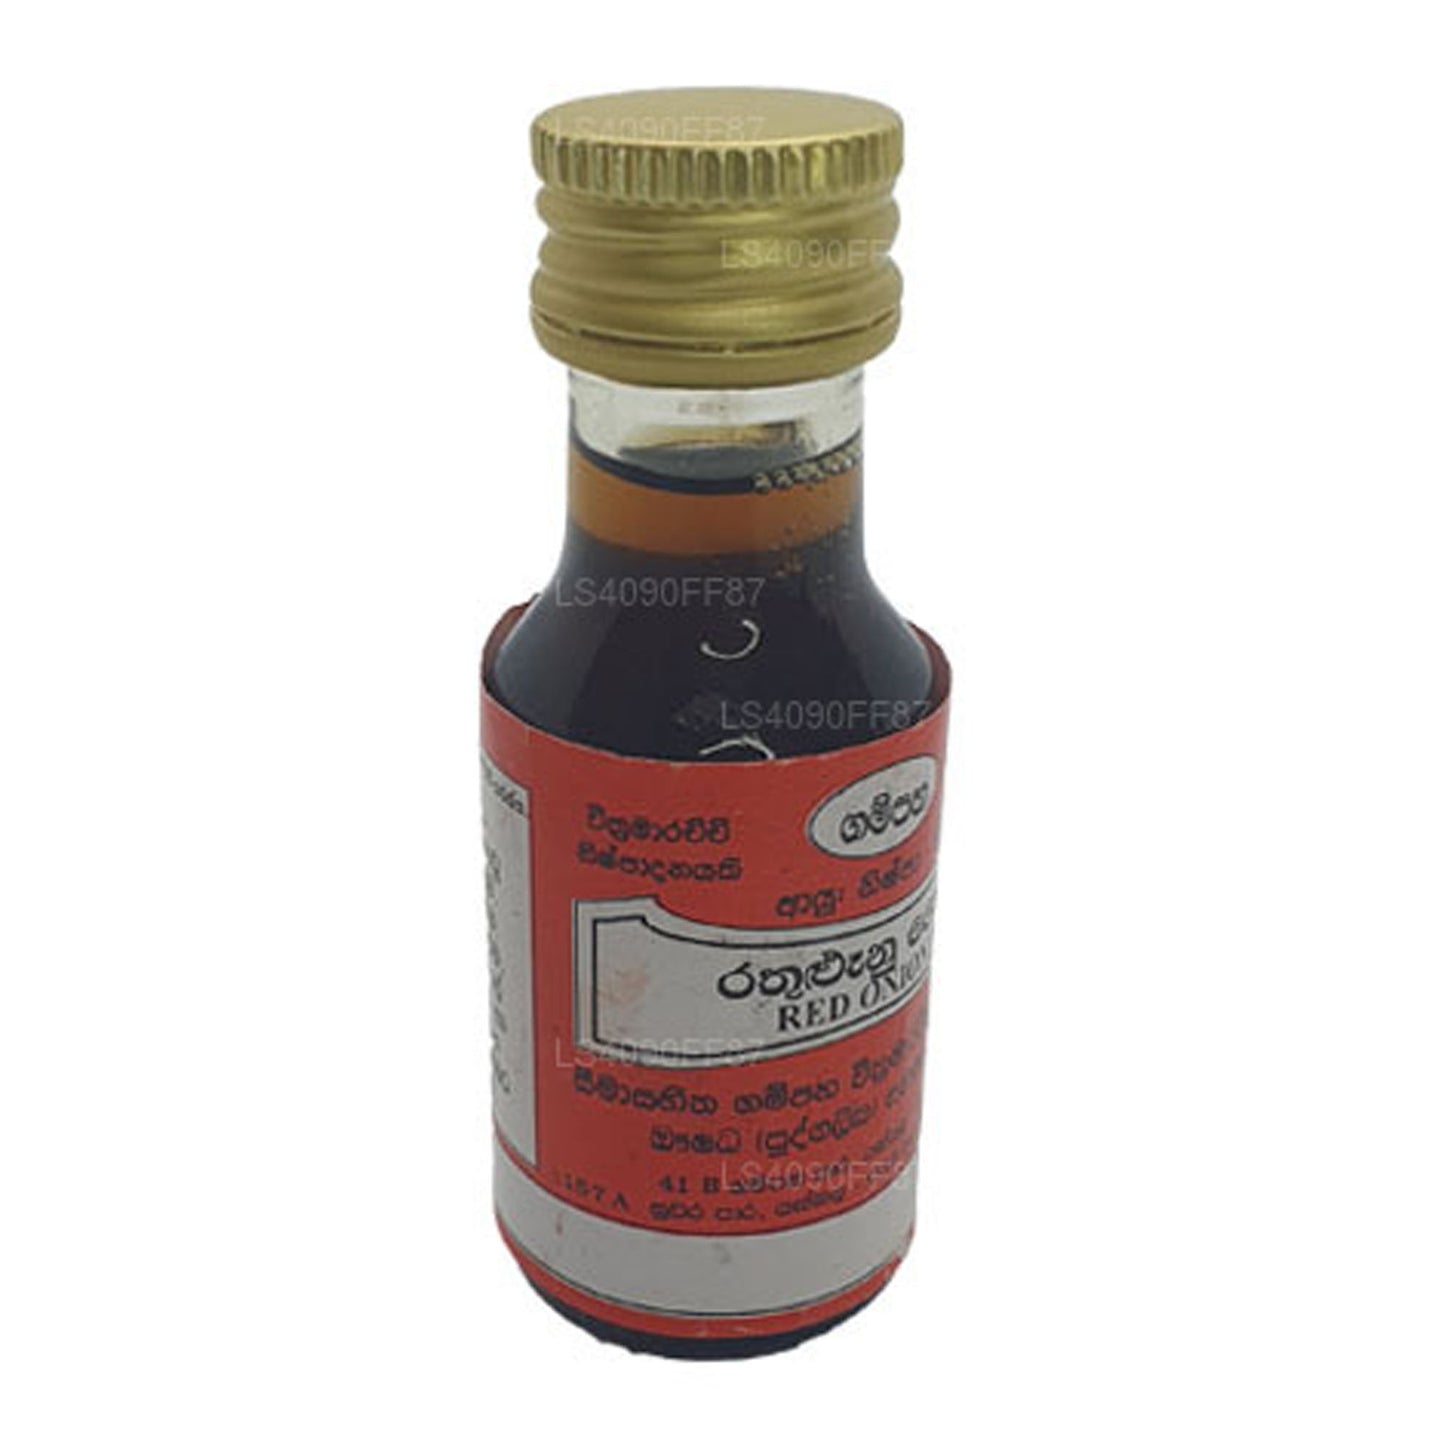 Olej z czerwonej cebuli Gampaha Wickramarachchi